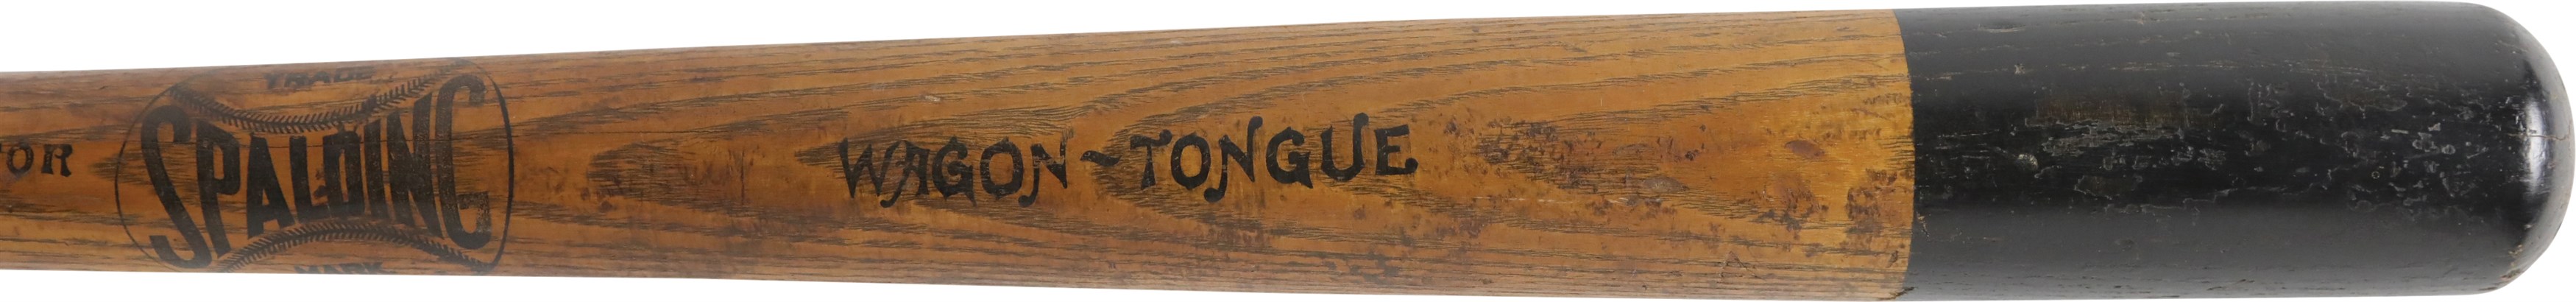 - 19th Century Spalding Wagon Tongue Stenciled Baseball Bat